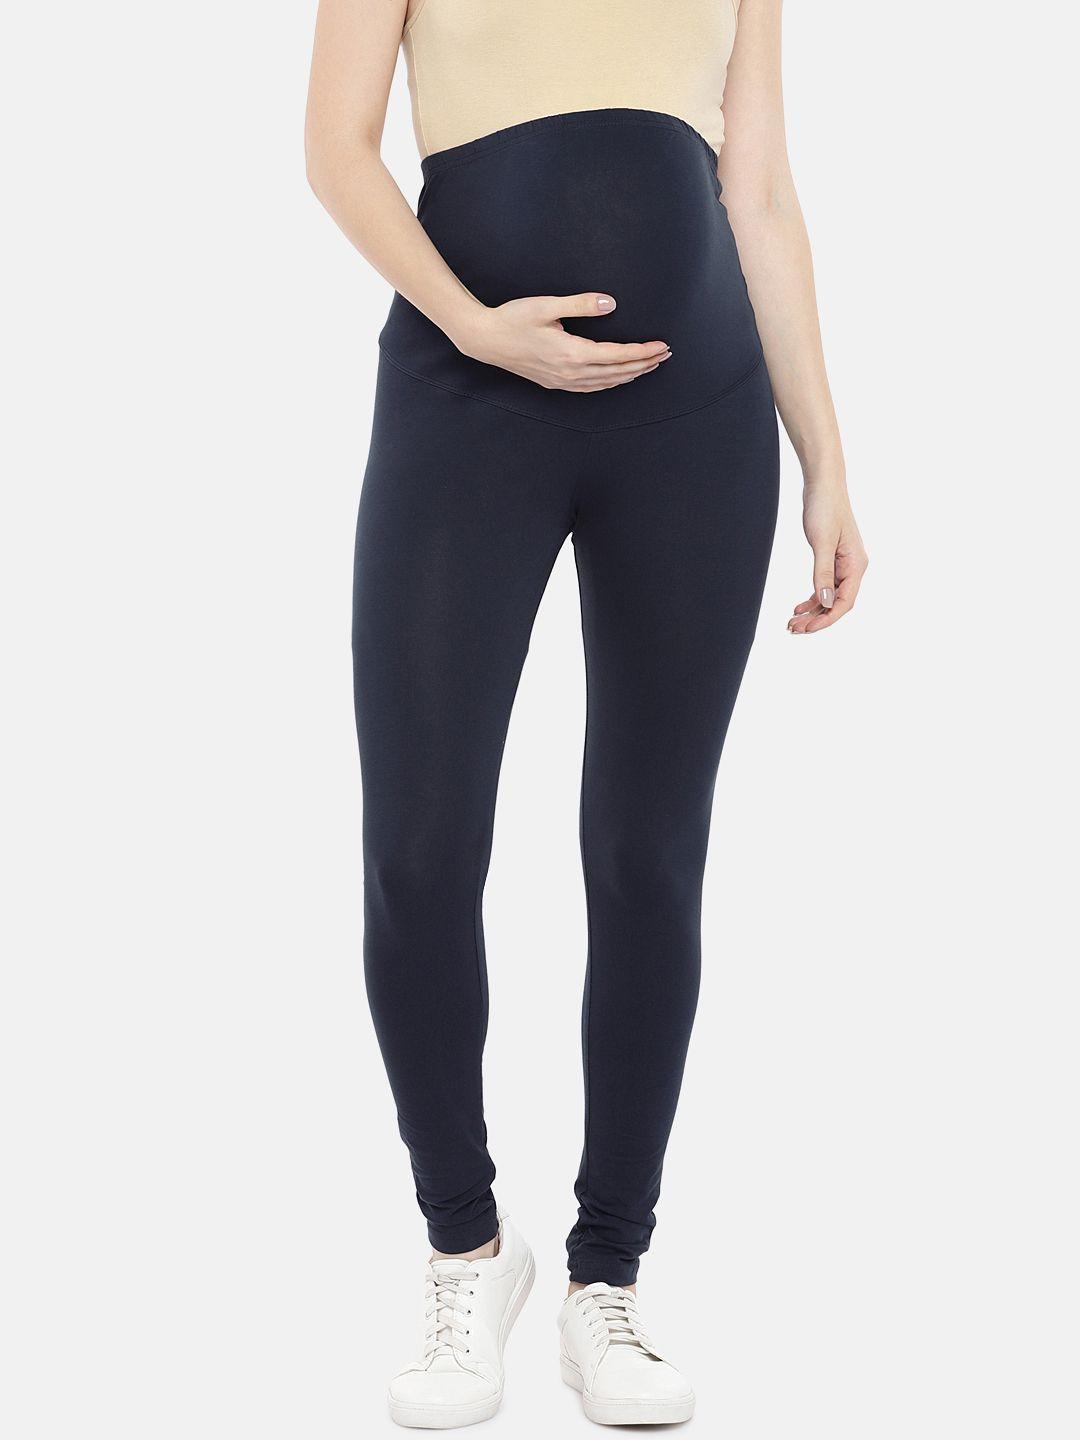 blush-9-maternity-women-navy-blue-solid-ankle-length-maternity-leggings